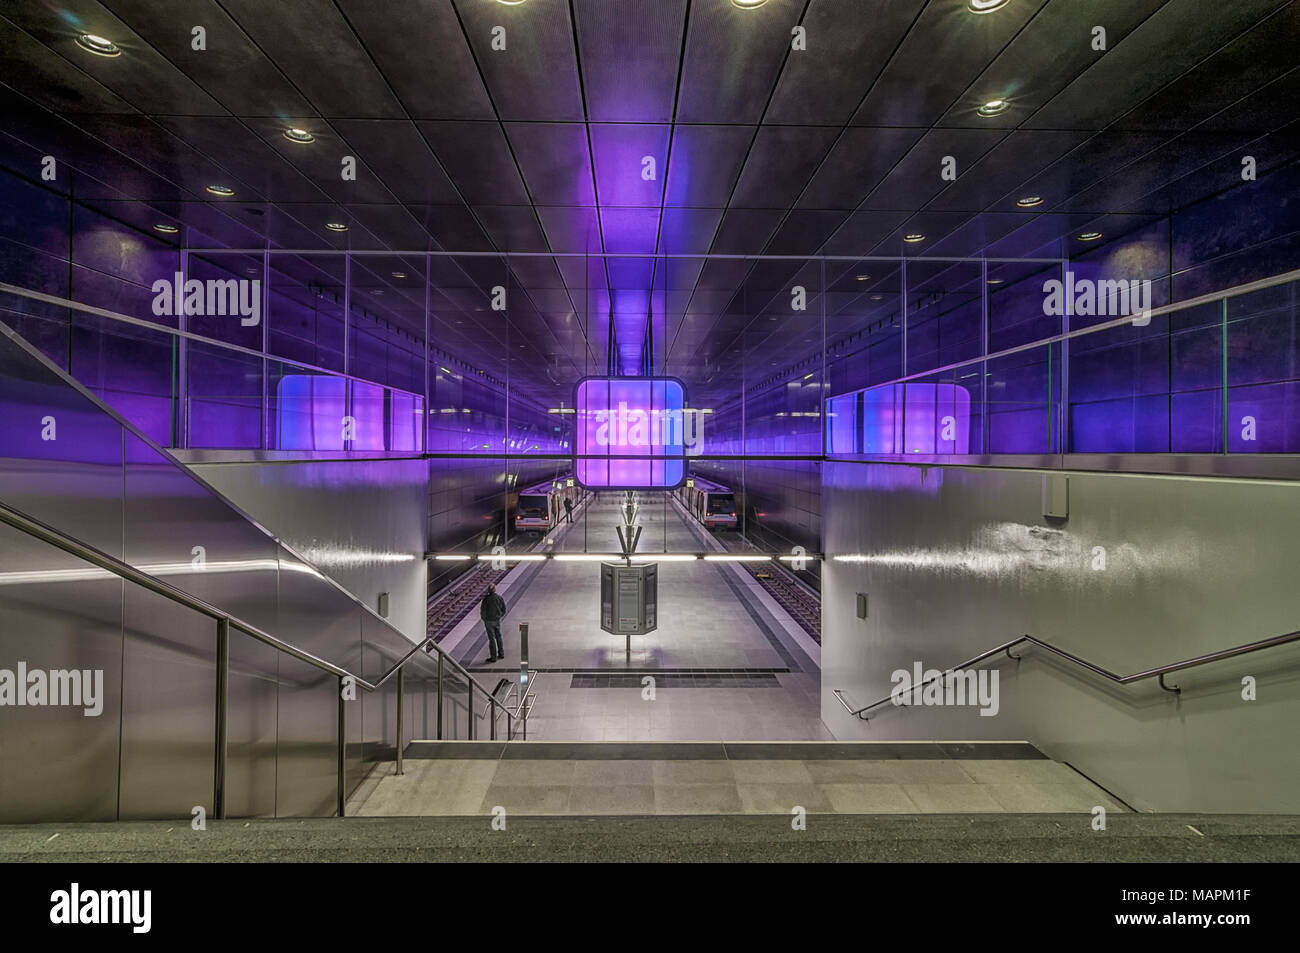 Hamburgo, Alemania - Marzo 09, 2014: Violeta iluminada plataforma de tren de la estación de metro Universidad Hafencity en Hamburgo, Alemania. Foto de stock